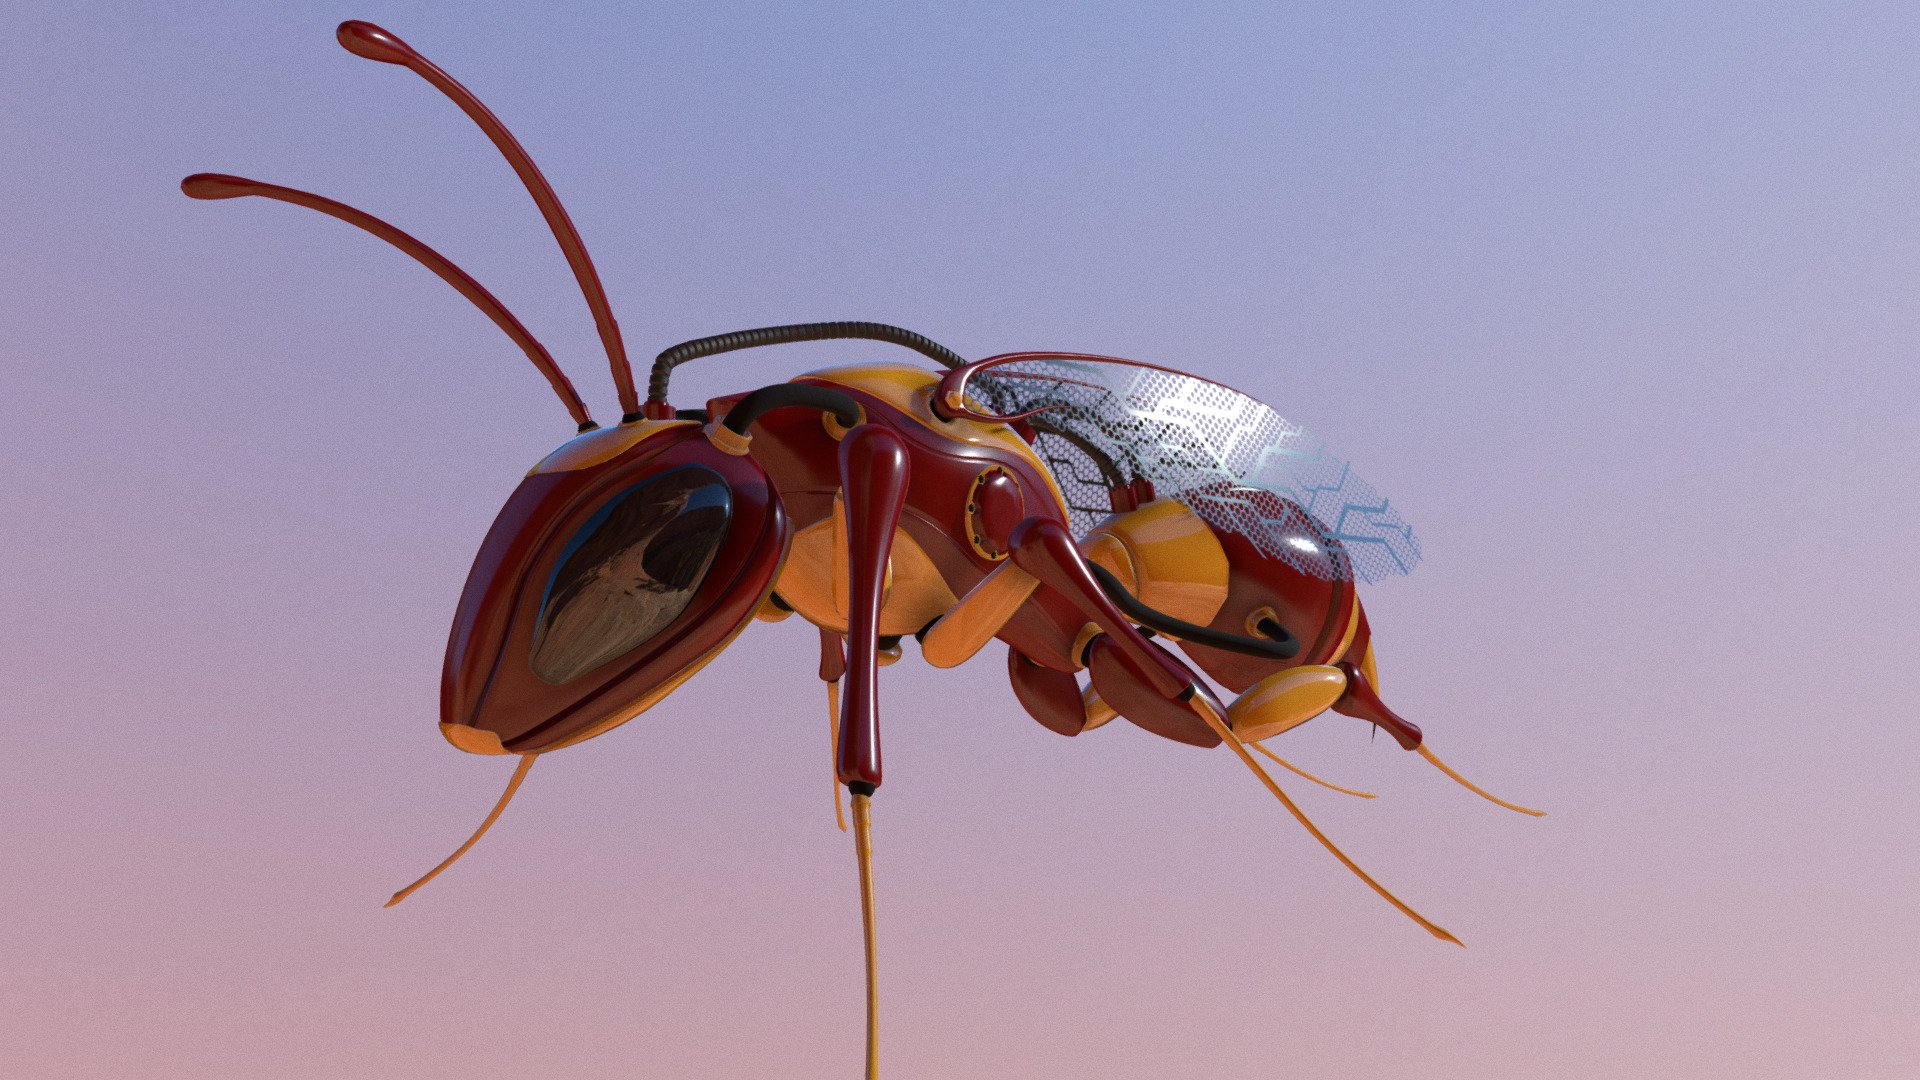 Robotic Wasp v2 - 3D model by Lee Dabrowski (@trickster42) 3d model